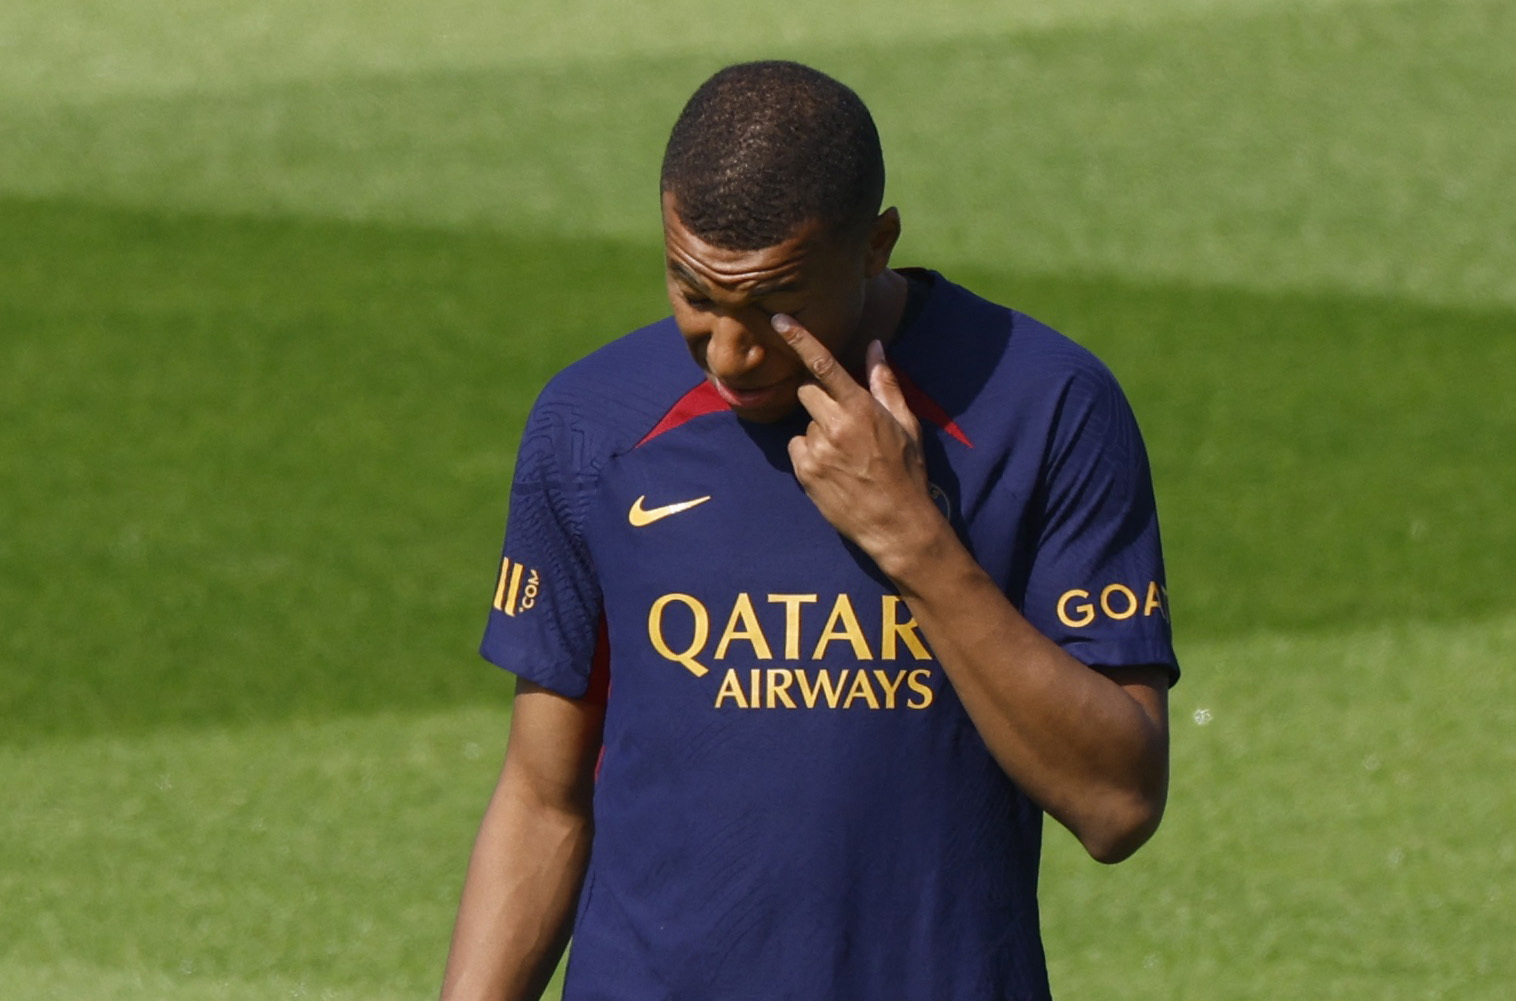 “Tras el rechazo de Mbappé a Arabia, doy un 95% de opciones de que llegue al Madrid este verano”